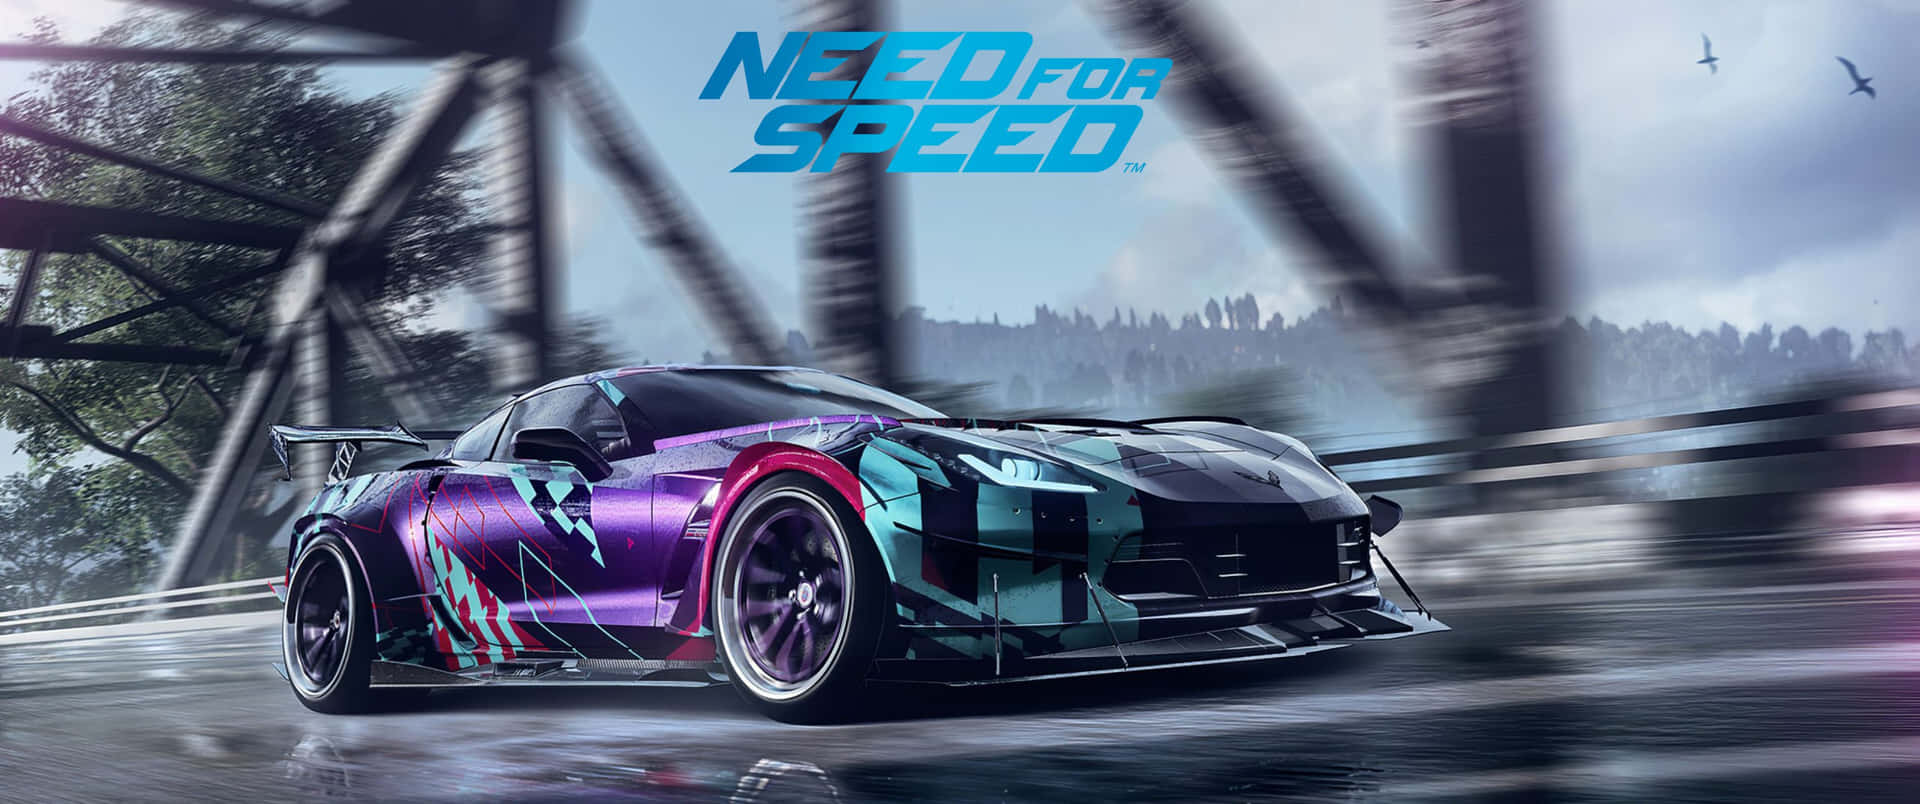 Spännandeupplevelser Med Need For Speed På En Full 3440x1440p Skärm!